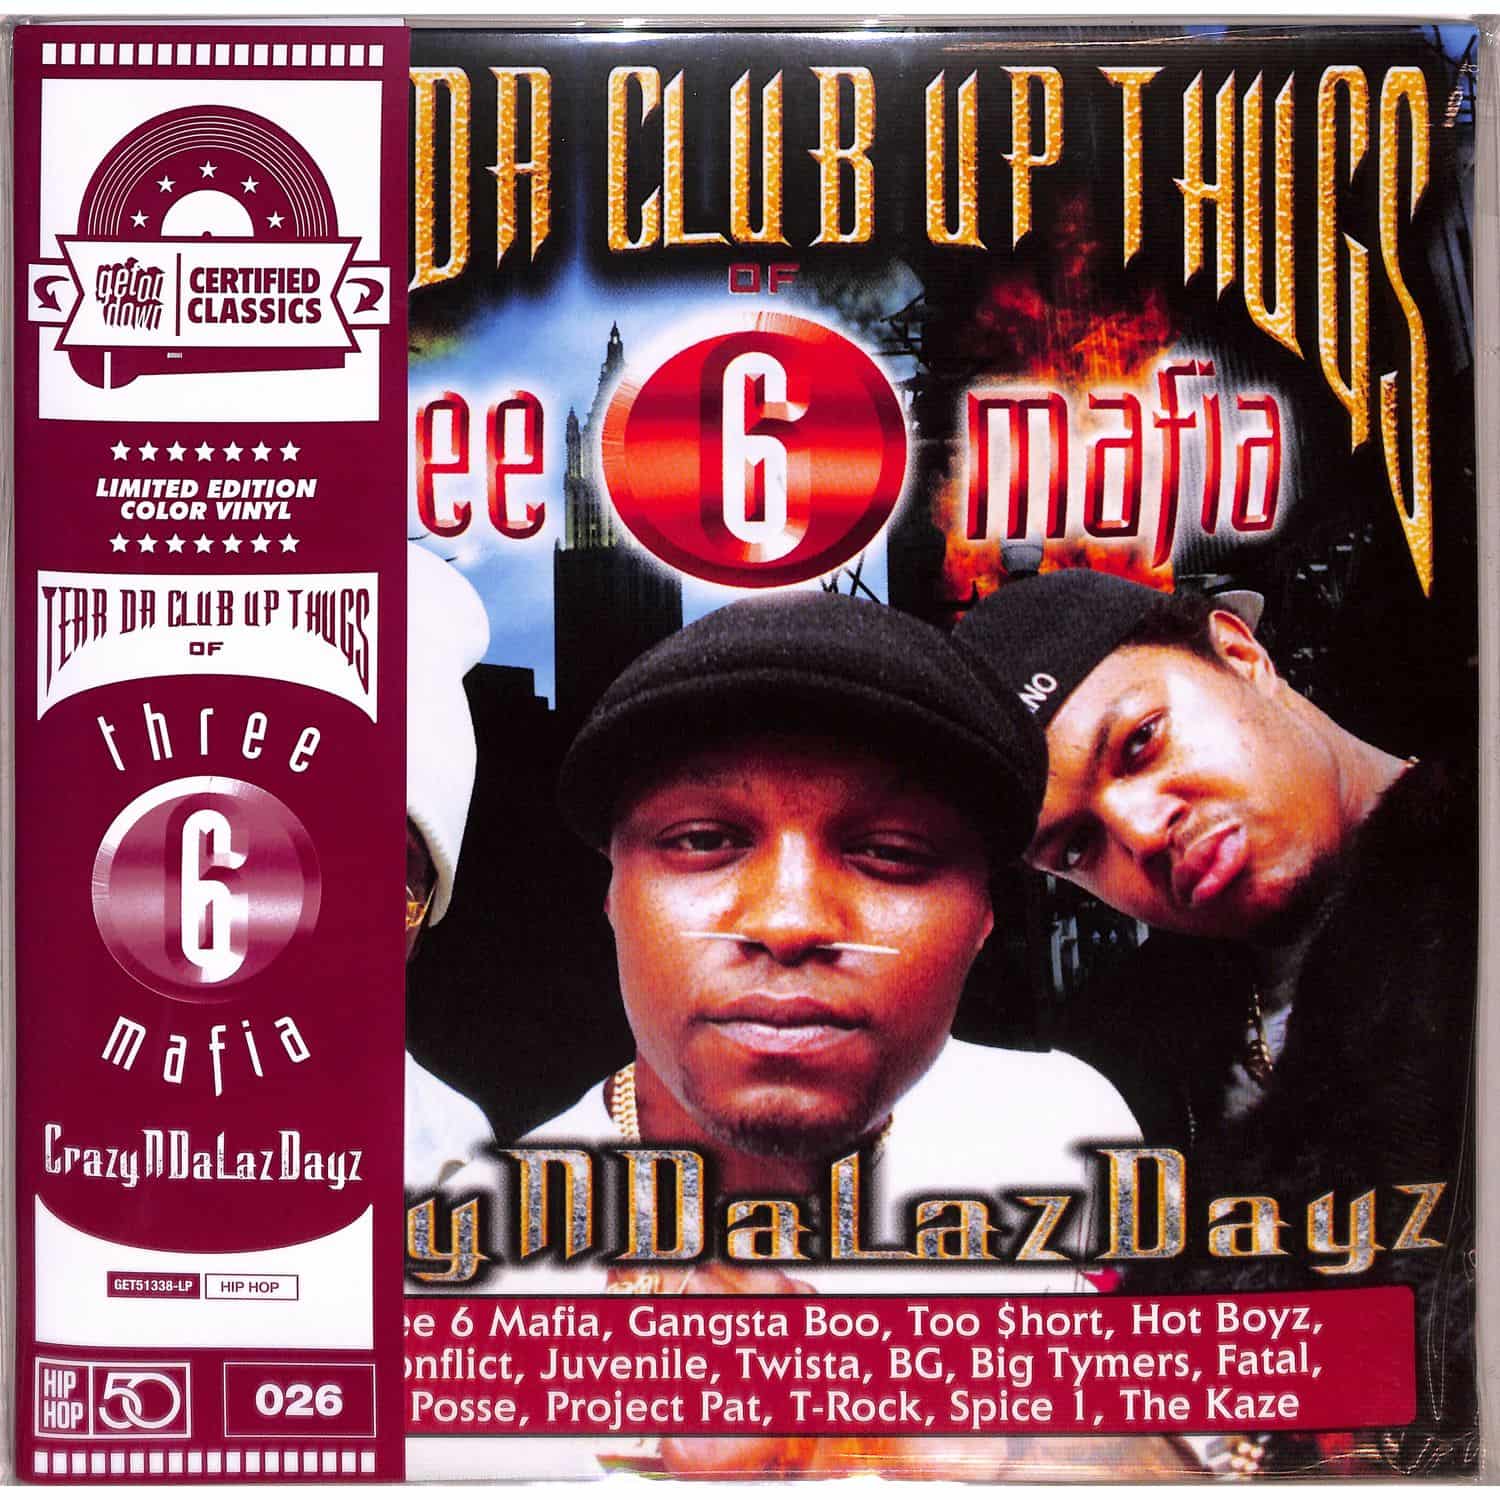 Tear Da Club Up Thugs of Three 6 Mafia - CrazyNDaLazDayz 